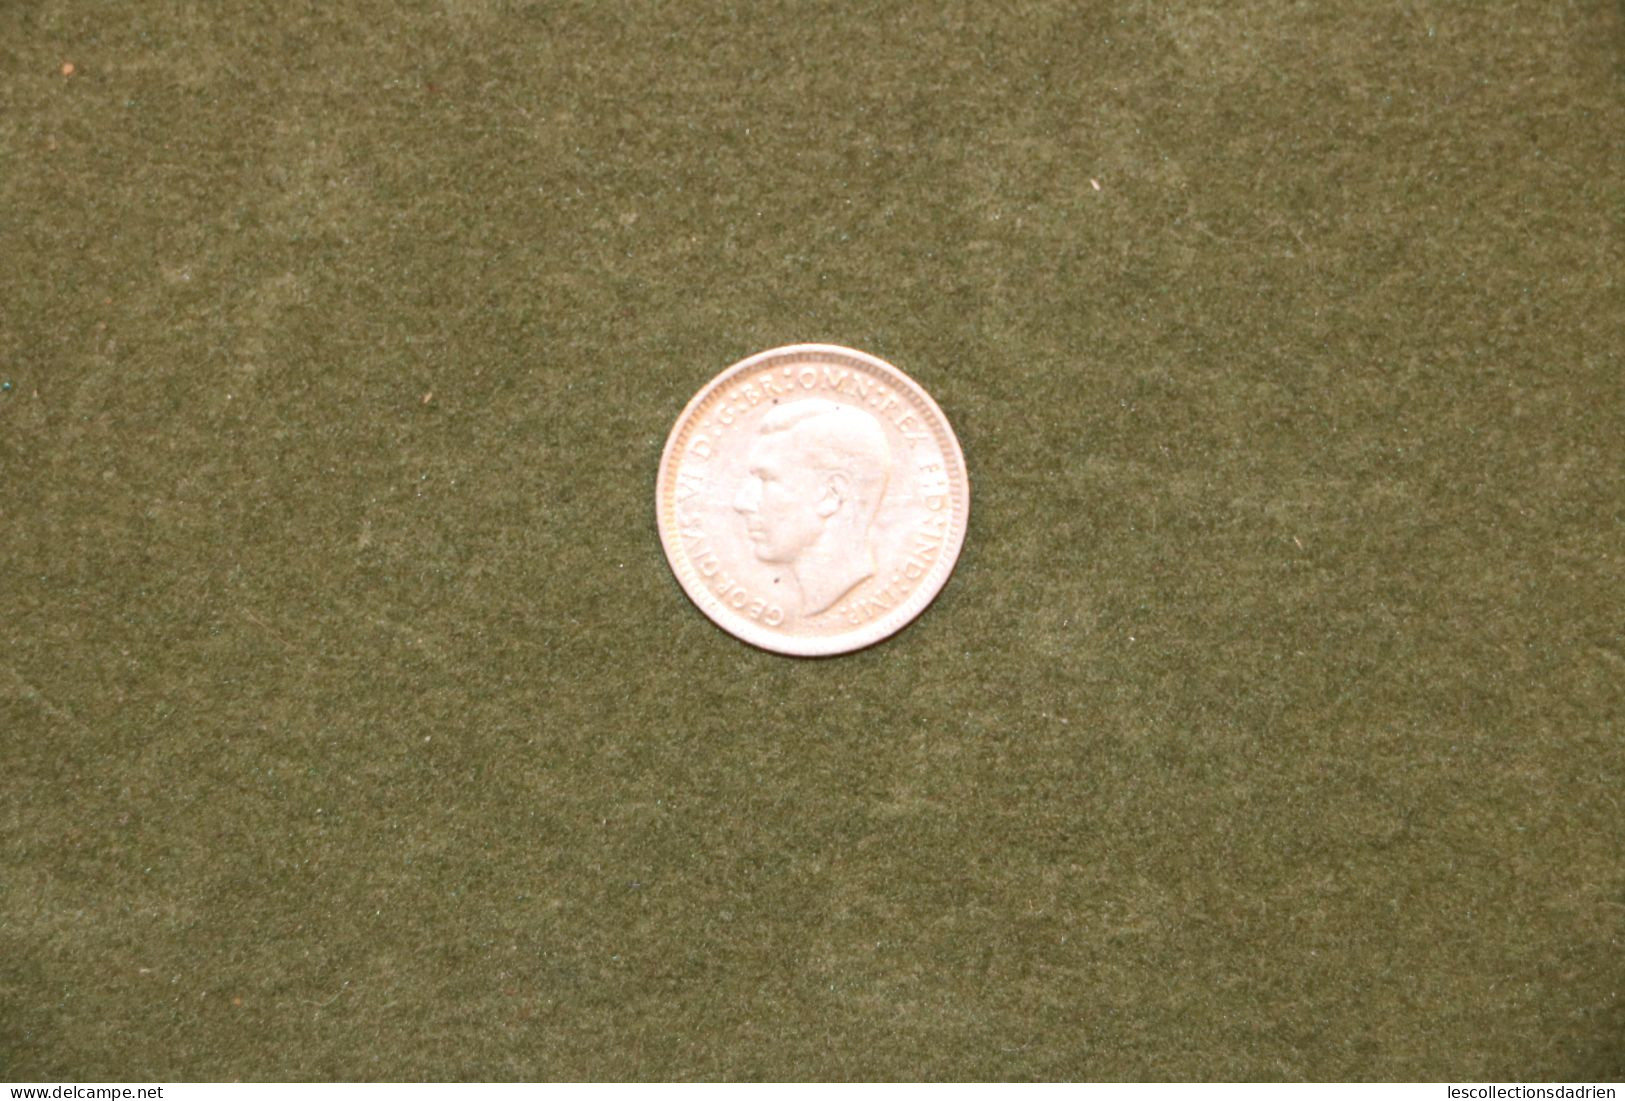 Pièce en argent Australie 3 pences 1944 très bon état - Australian silver coin Georges VI